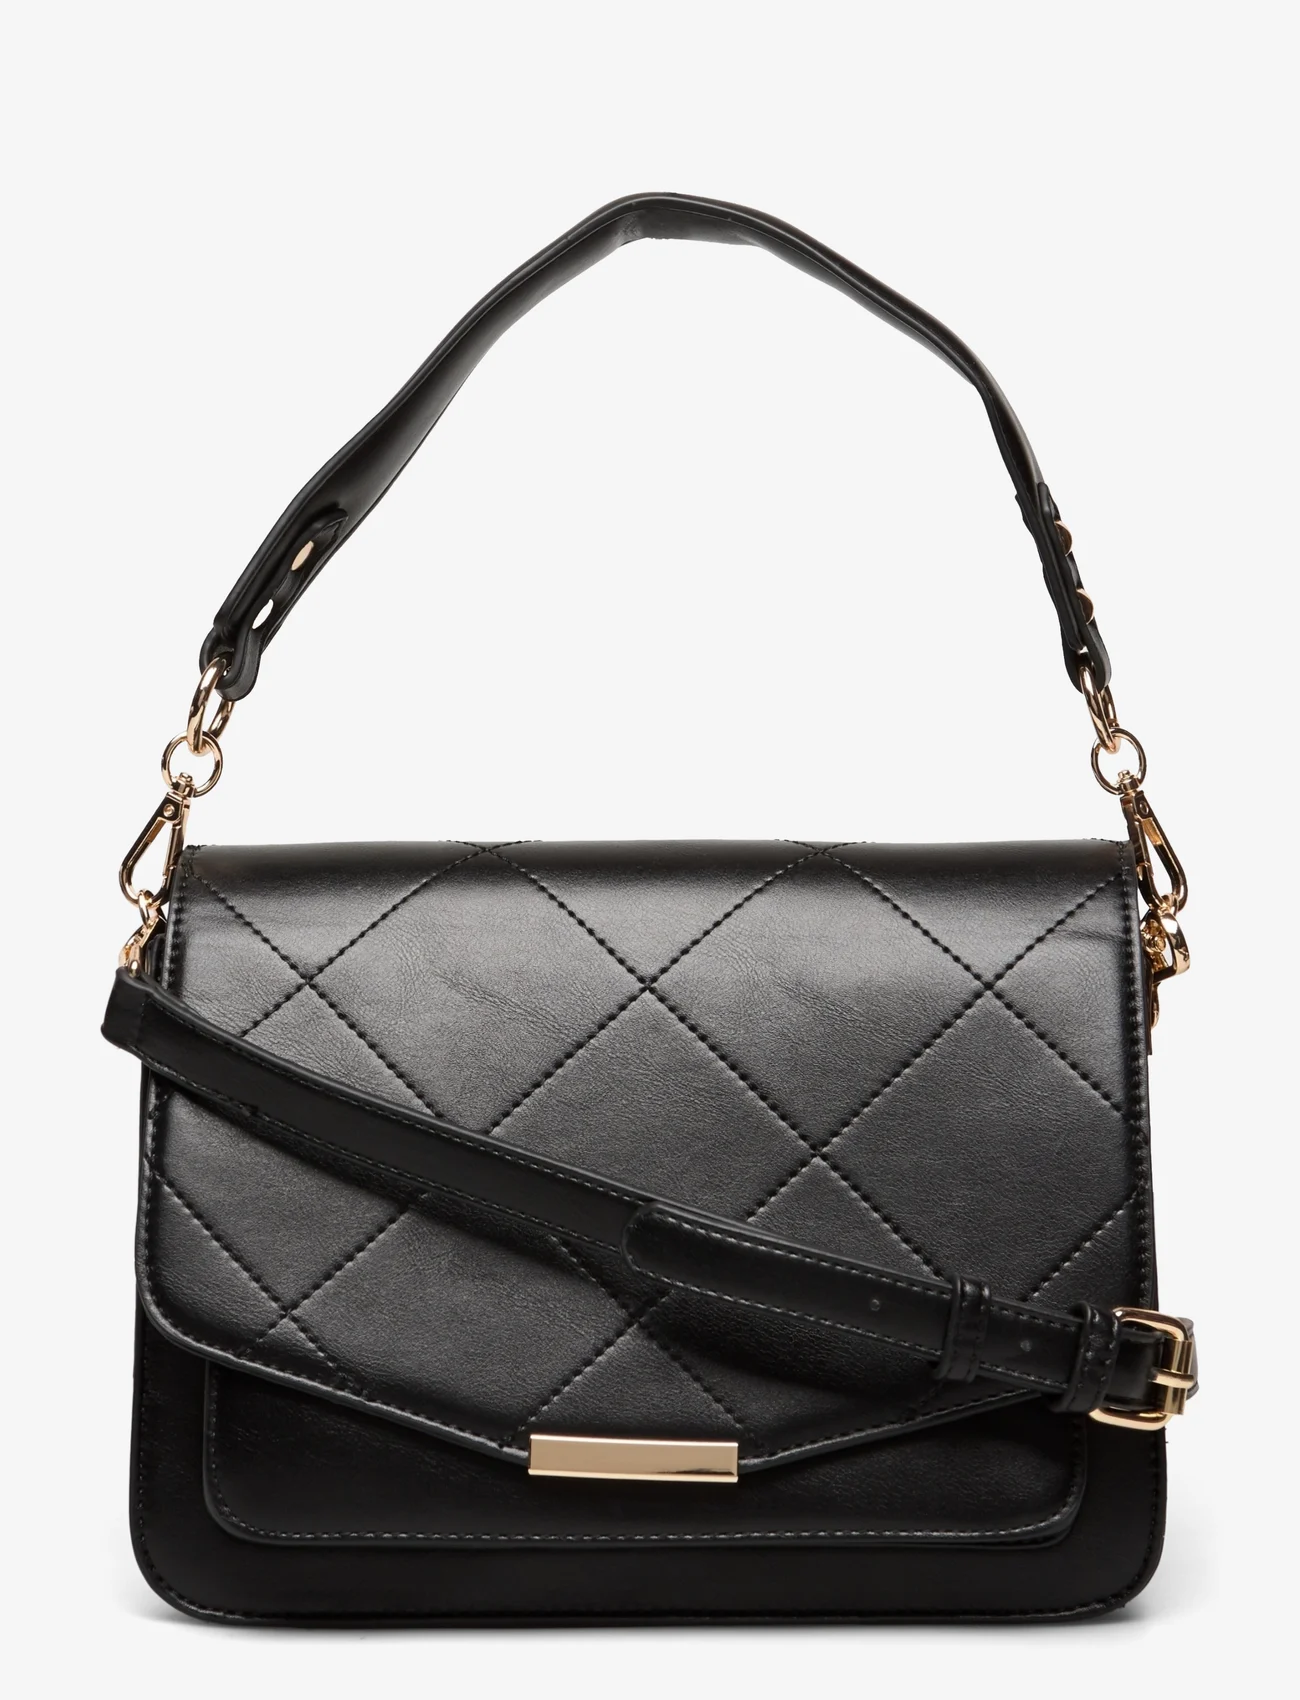 Noella - Blanca Multi Compartment Bag - vakarėlių drabužiai išparduotuvių kainomis - black leather look - 0